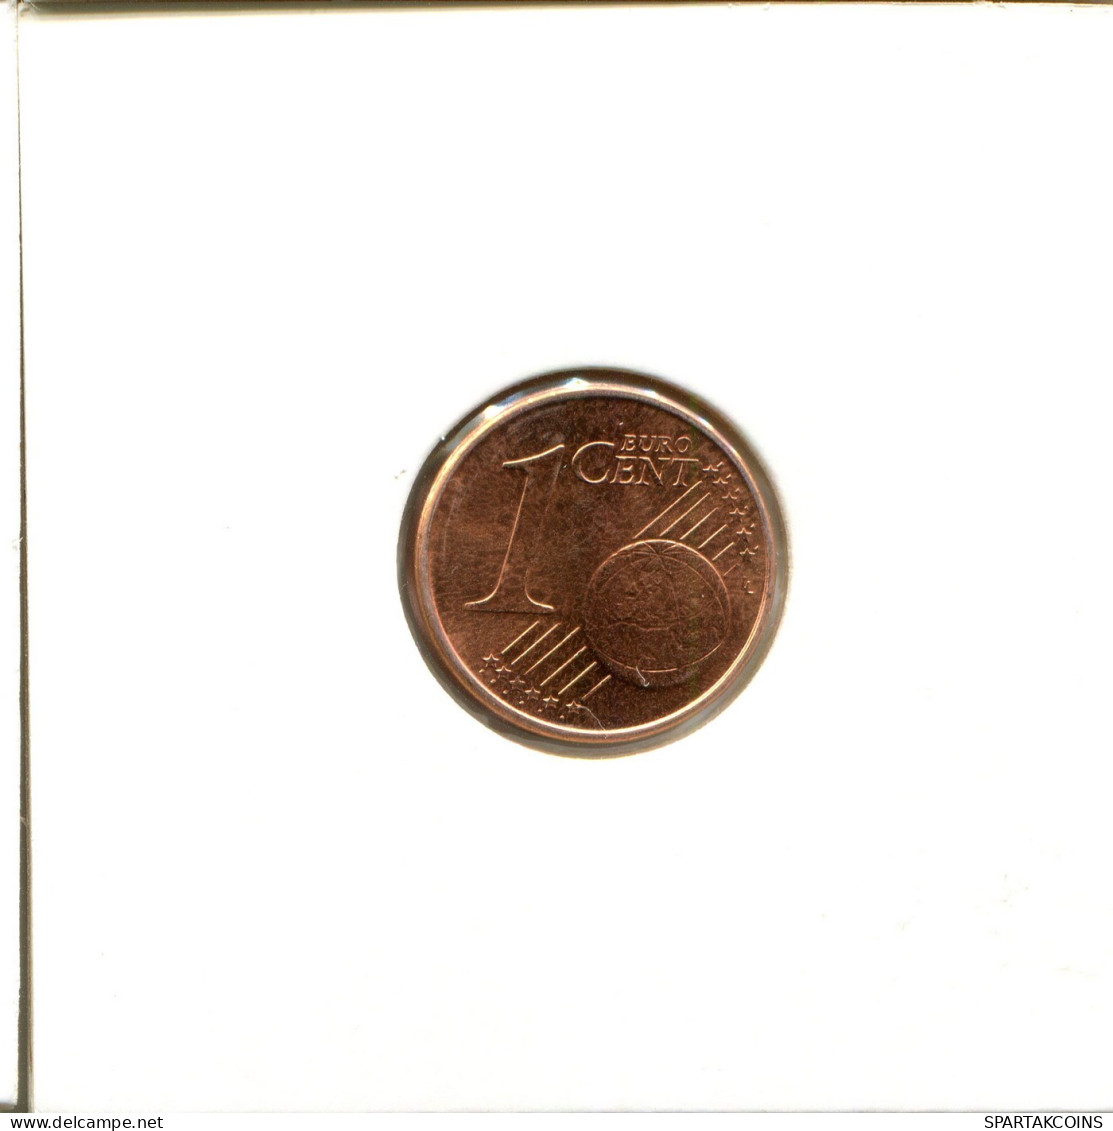 1 EURO CENT 2005 GRECIA GREECE Moneda #EU164.E.A - Grèce